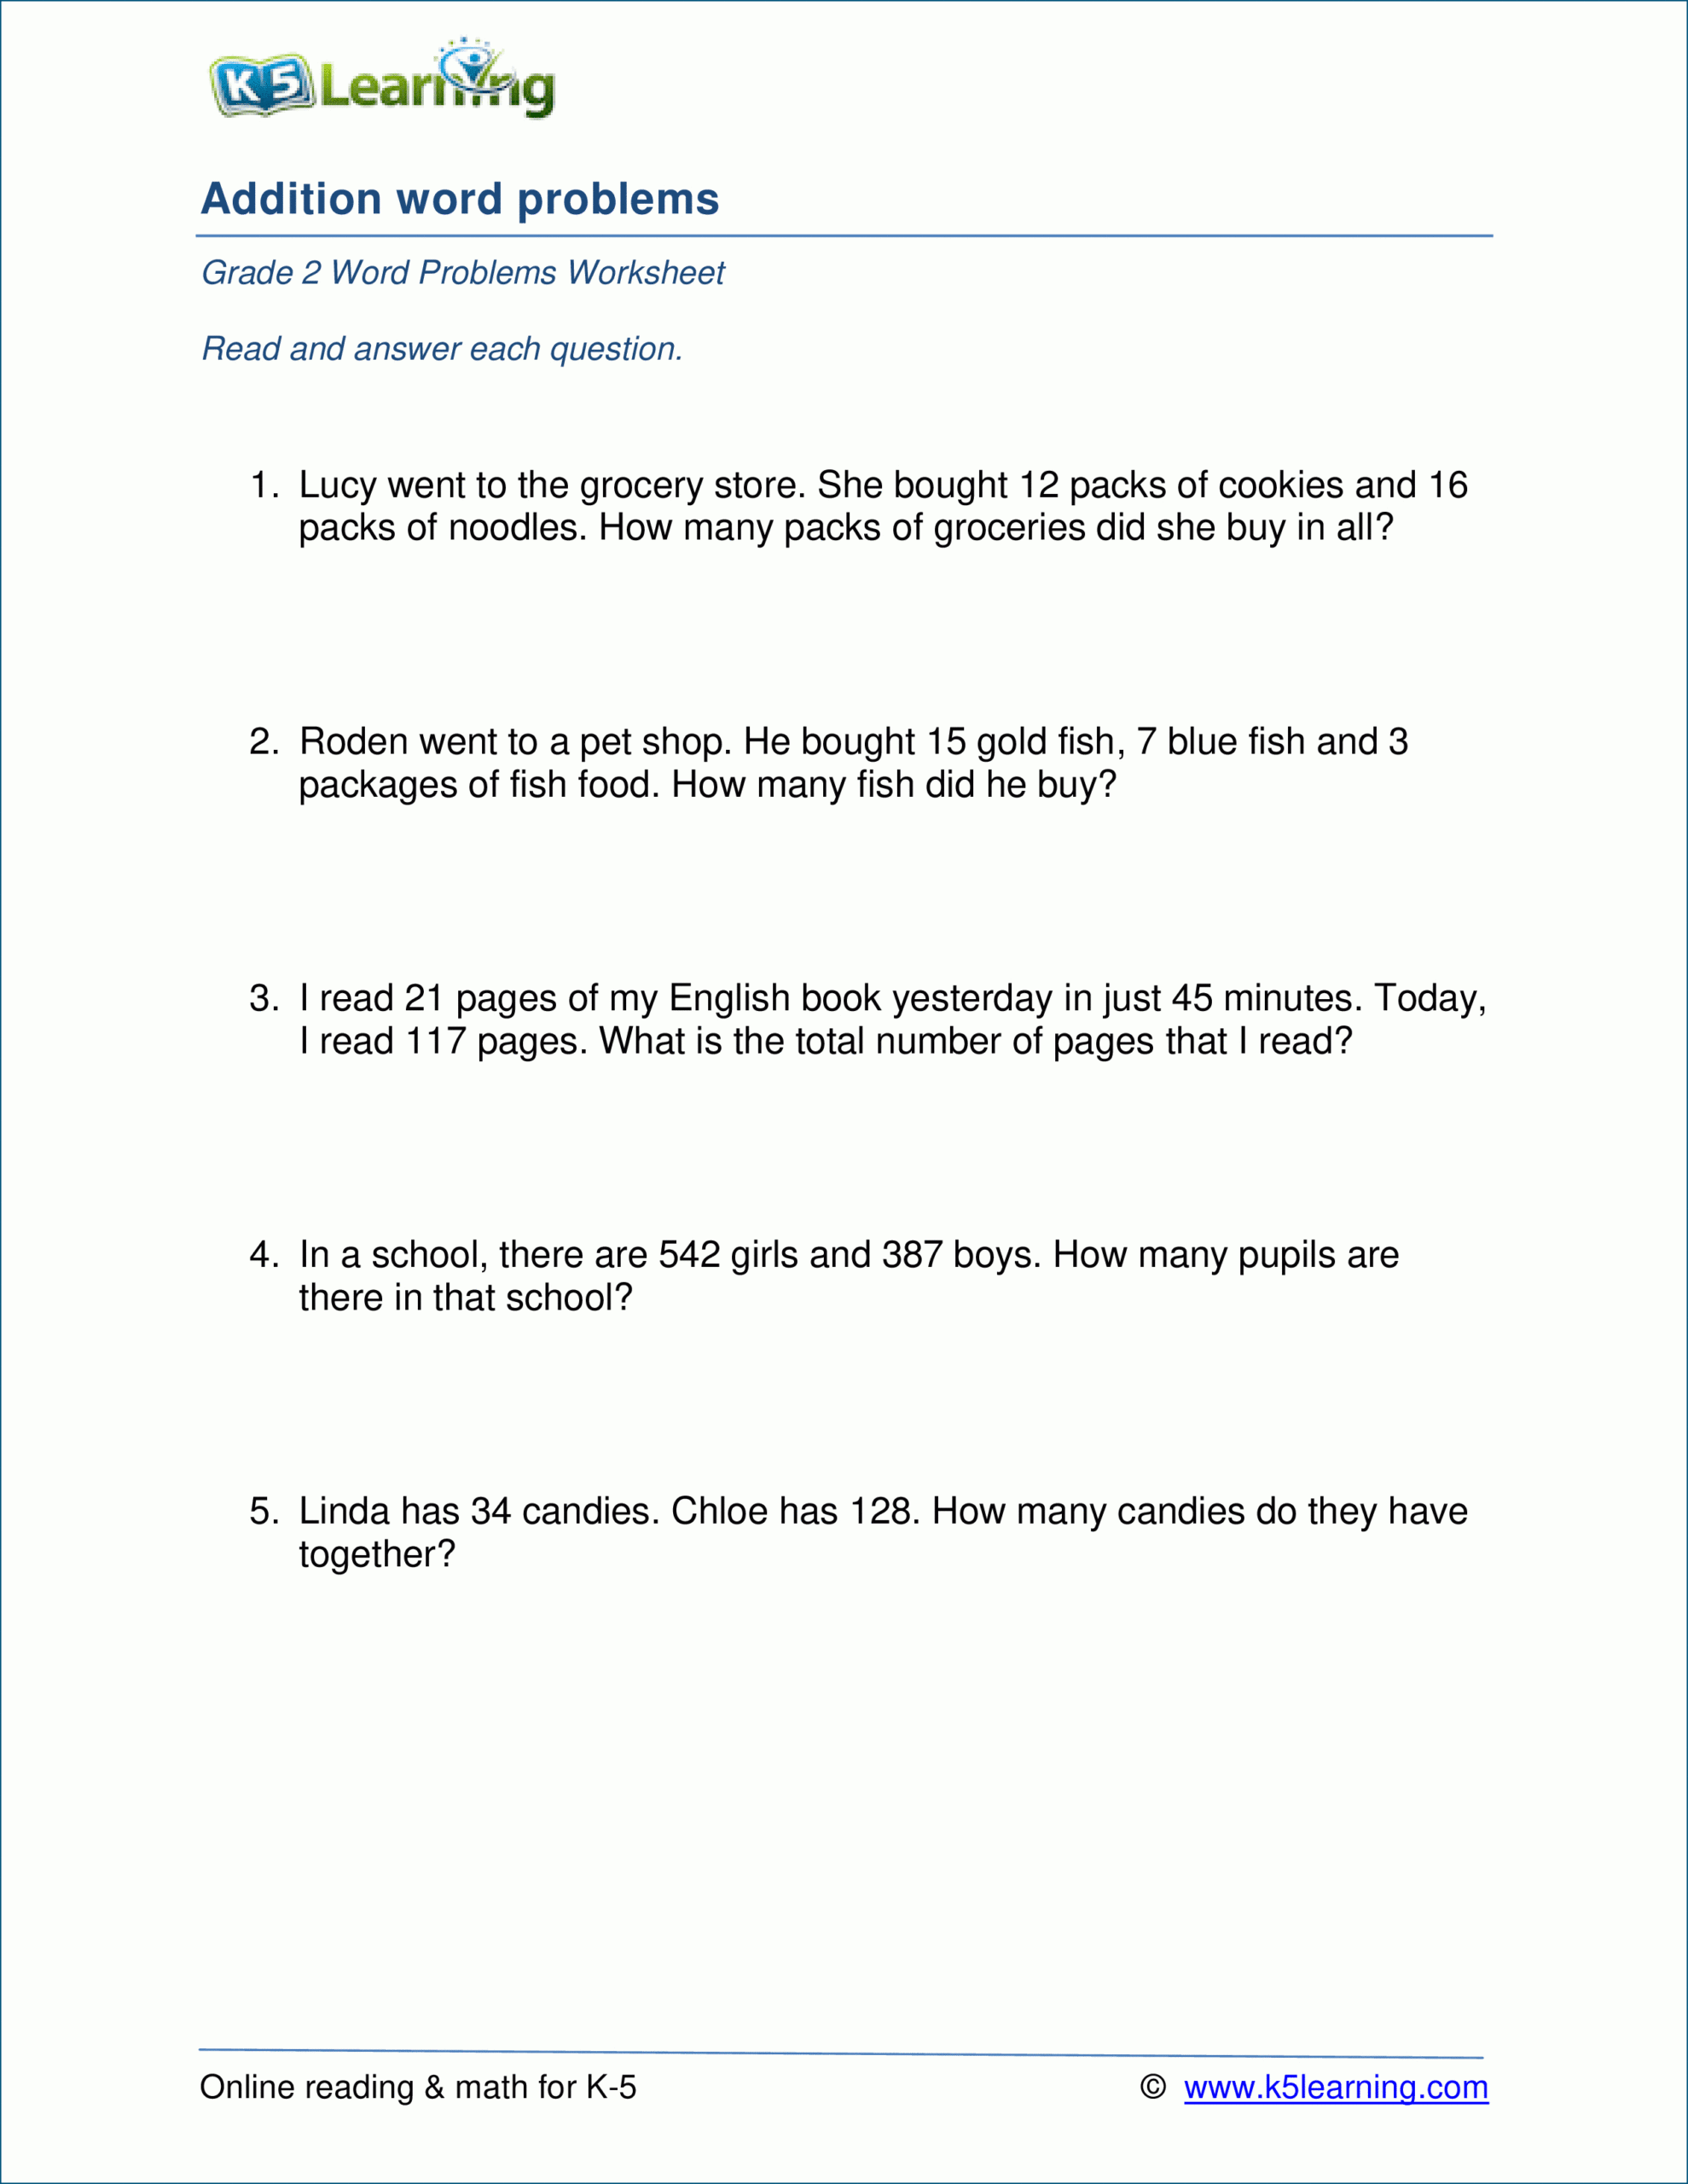 Grade 2 Addition Word Problem Worksheets (1-3 Digits) | K5 with Multiplication Worksheets K5 Learning